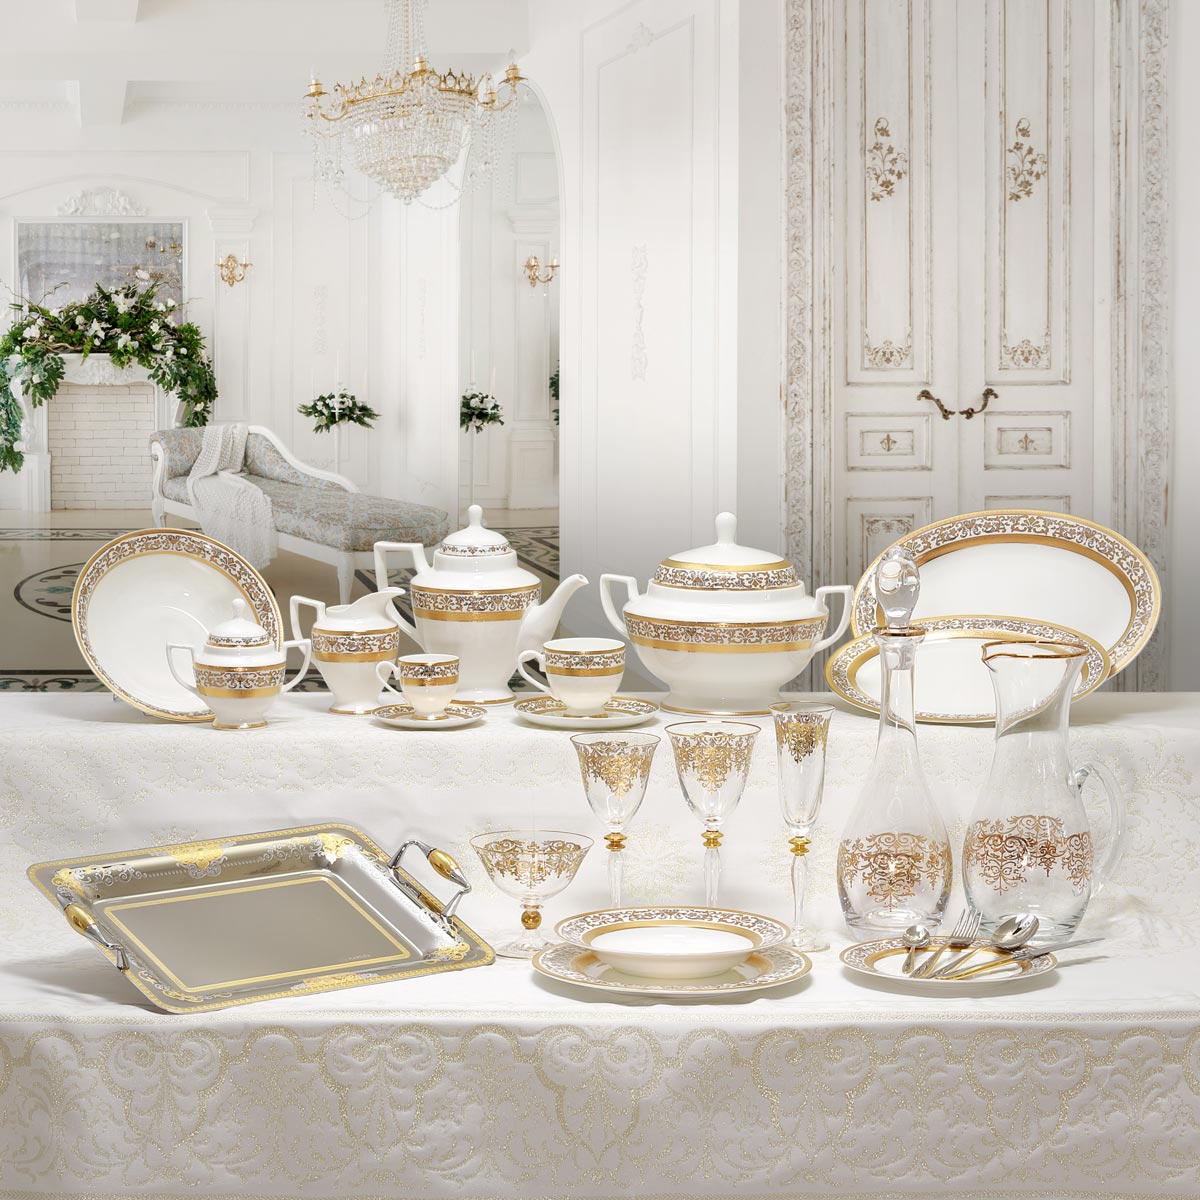 Servizio piatti e bicchieri stile barocco con decoro in oro inciso - Prestige